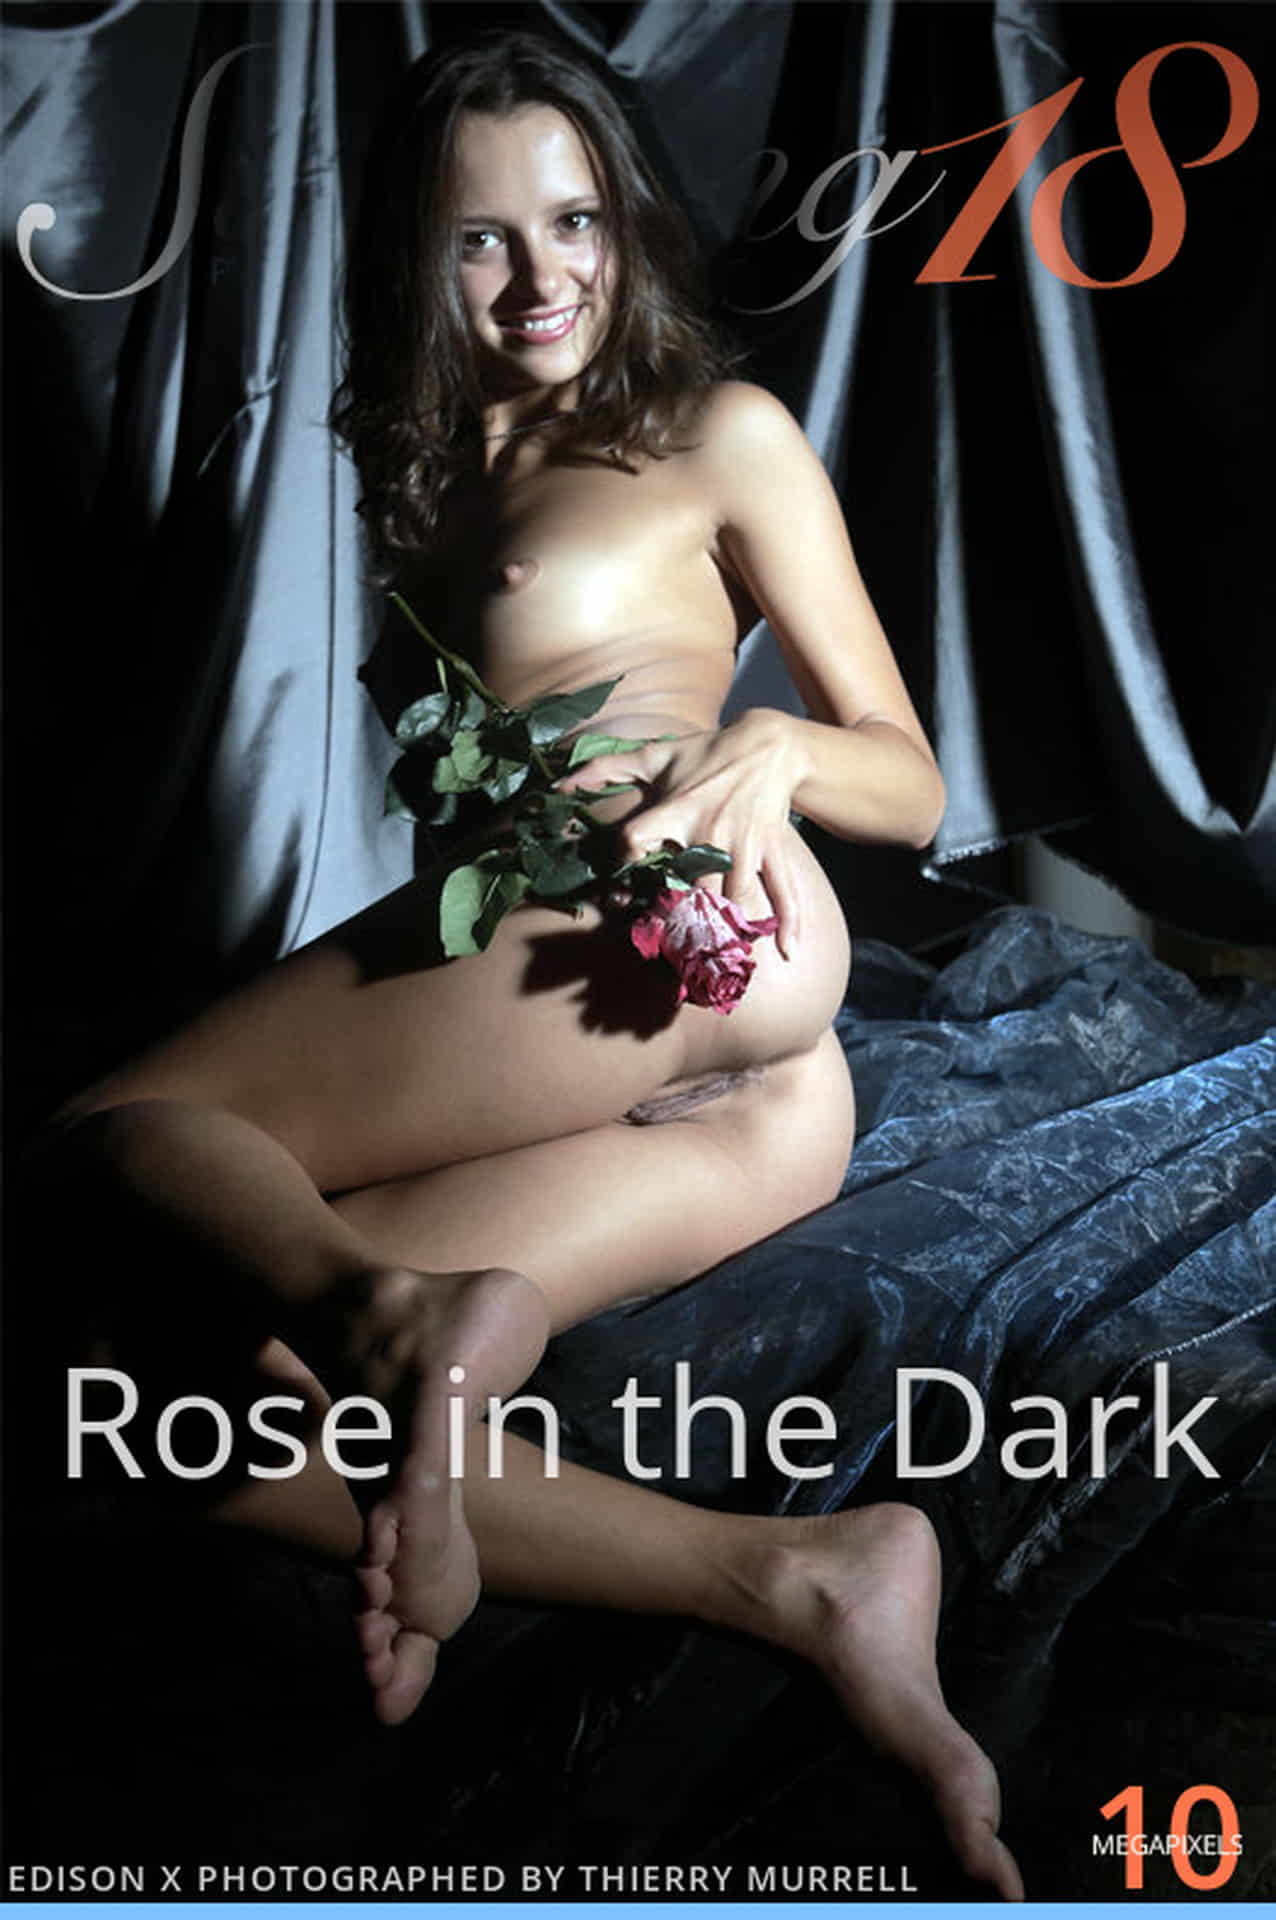 어둠 속의 장미와 신비한 부분 ——Edison X - Rose in the Dark